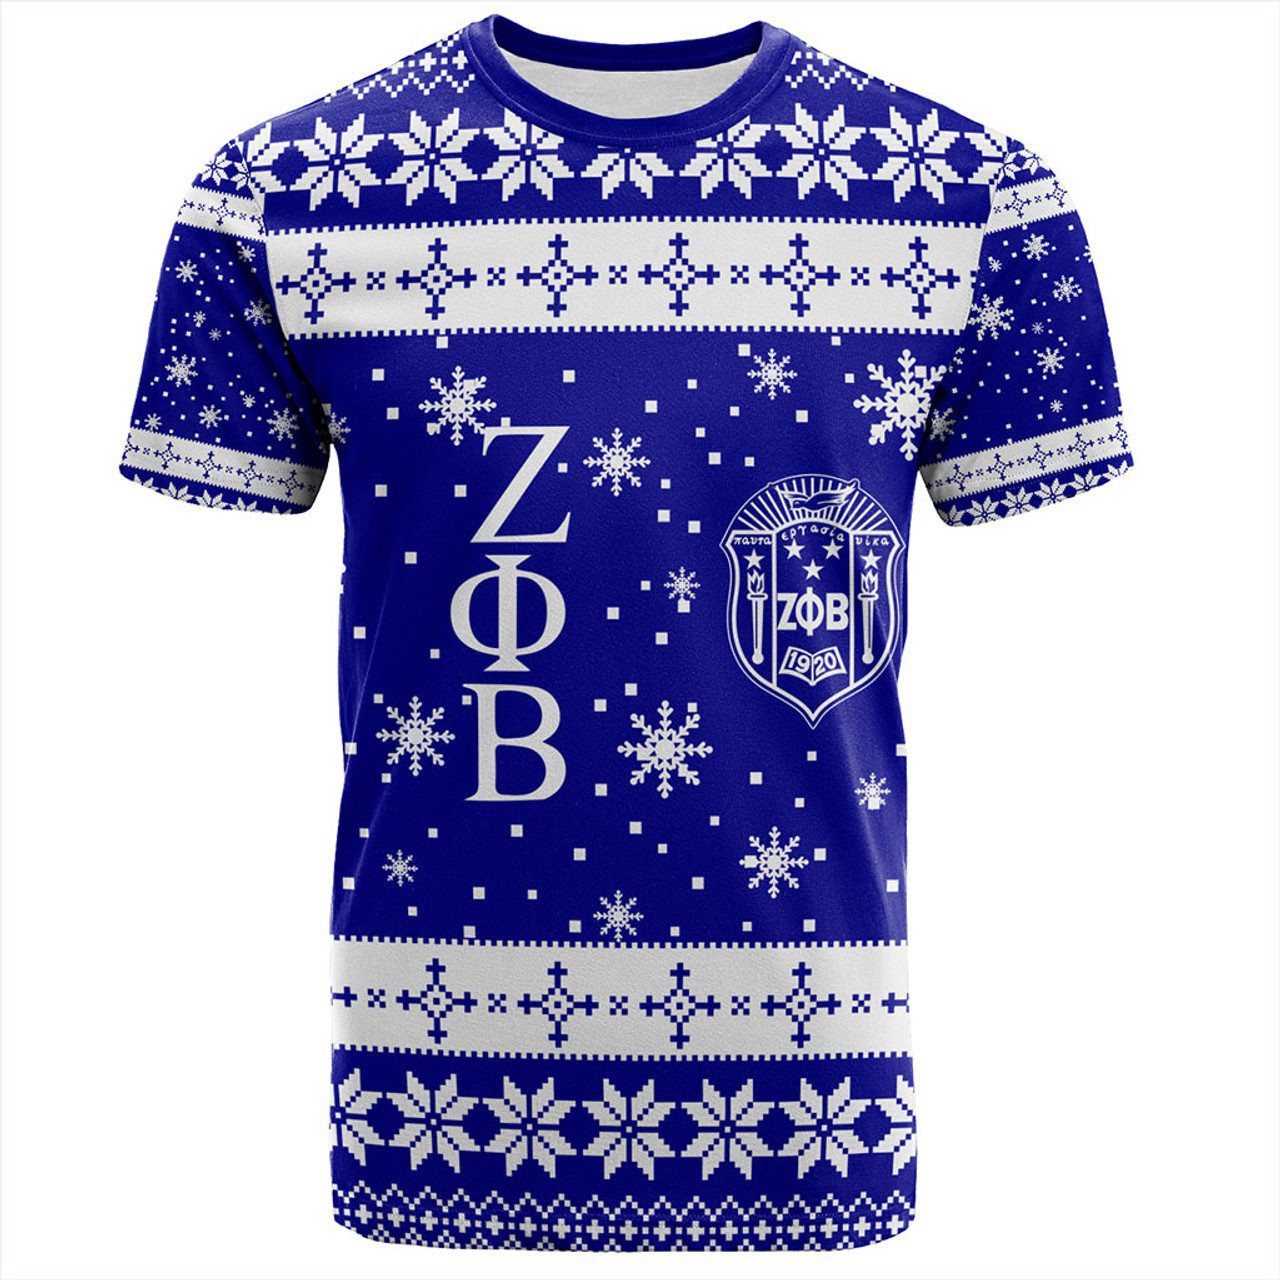 Zeta Phi Beta T-Shirt Sorority Christmas